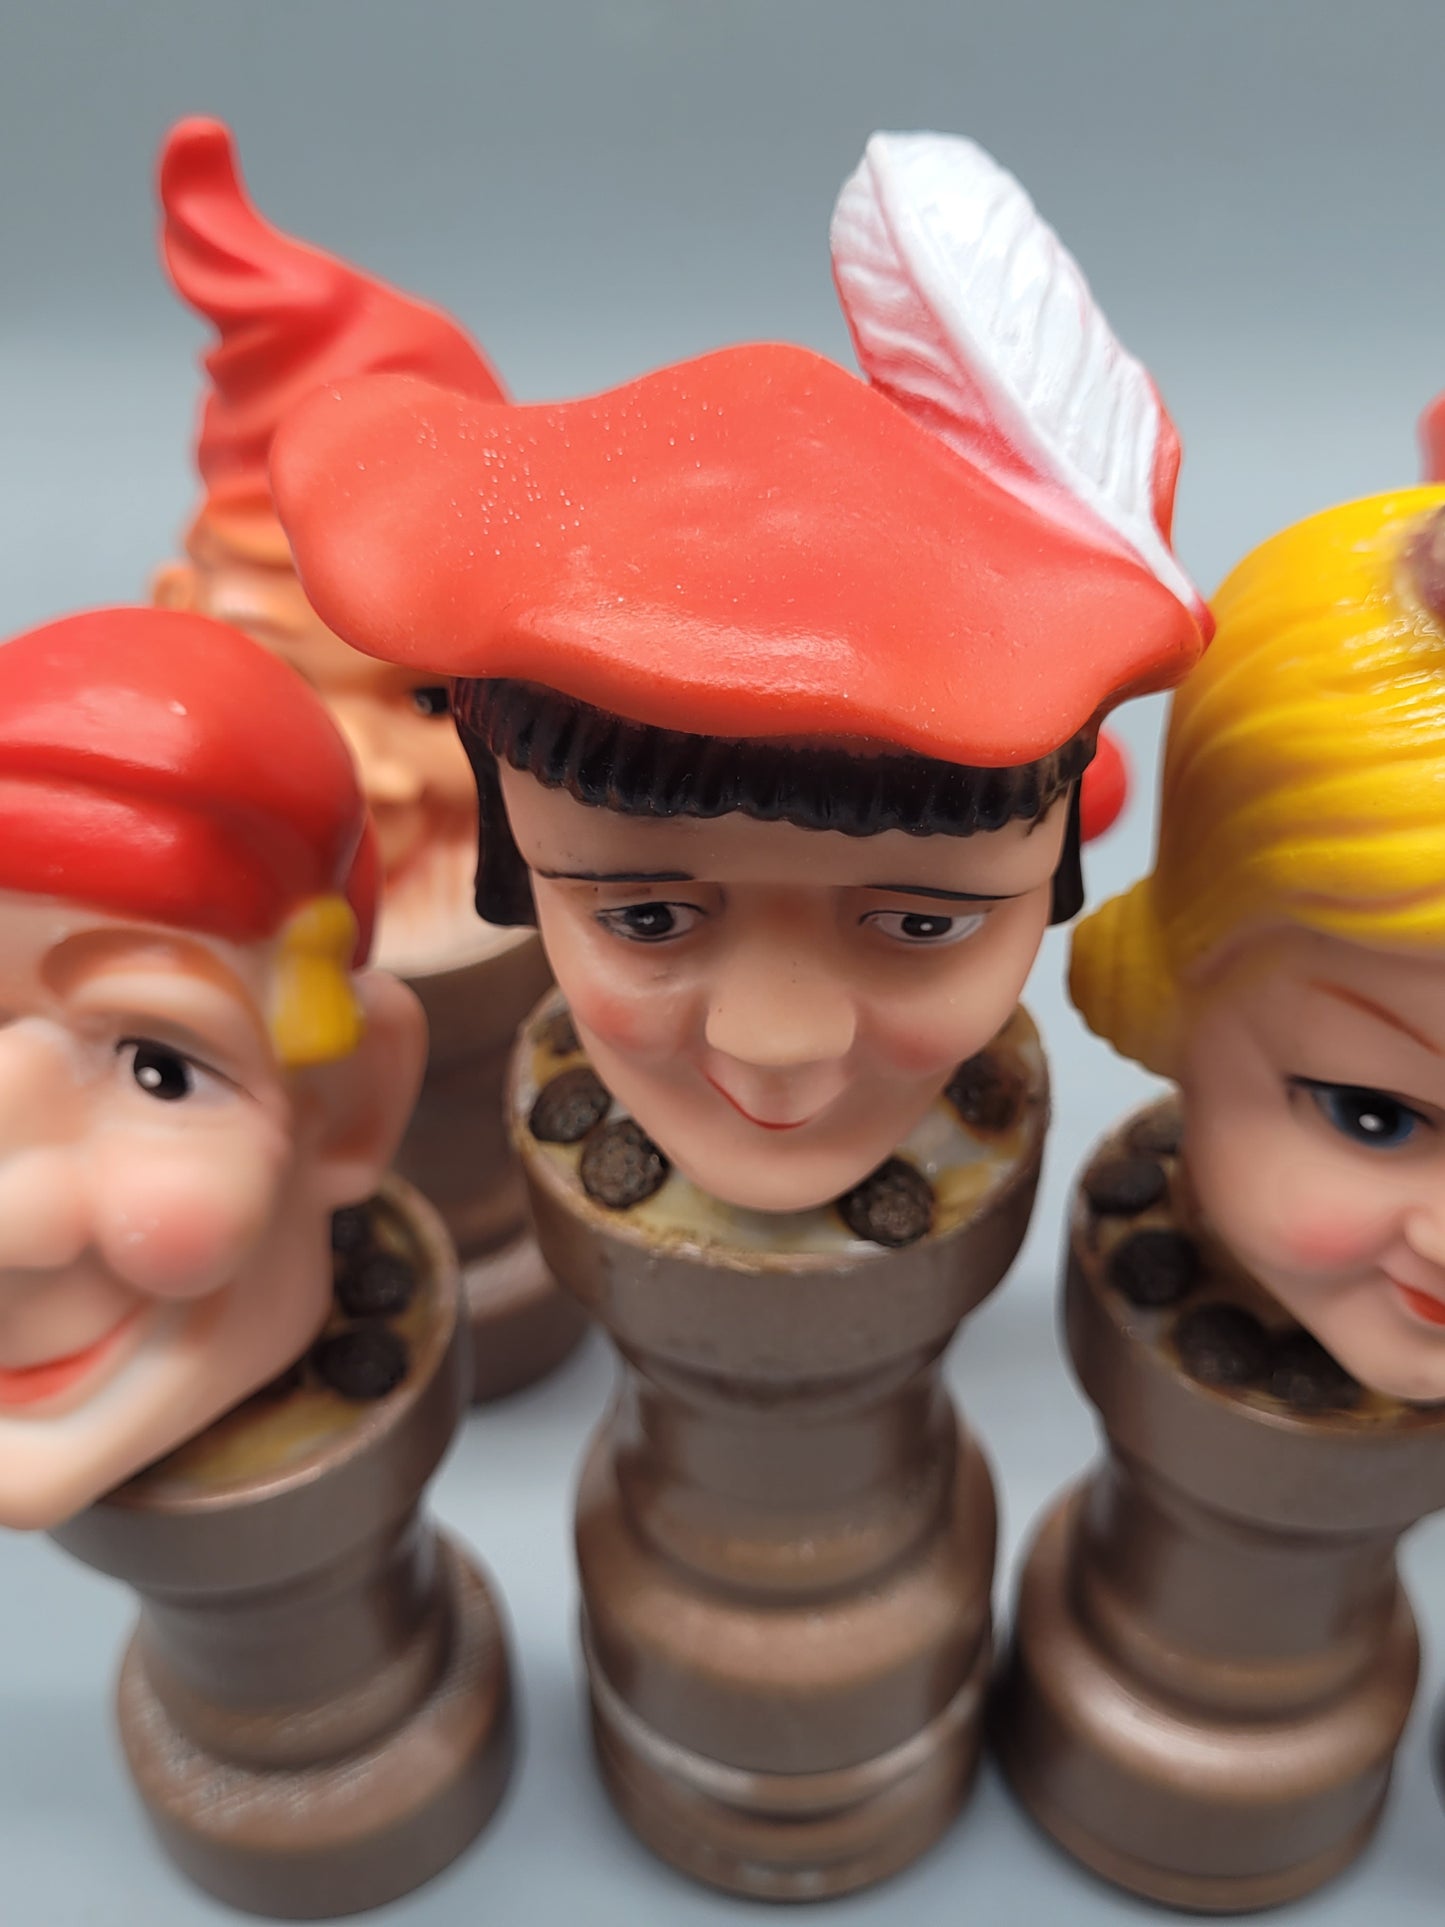 Amüsante Ritterliche Schachfiguren, Puppen Handpuppen